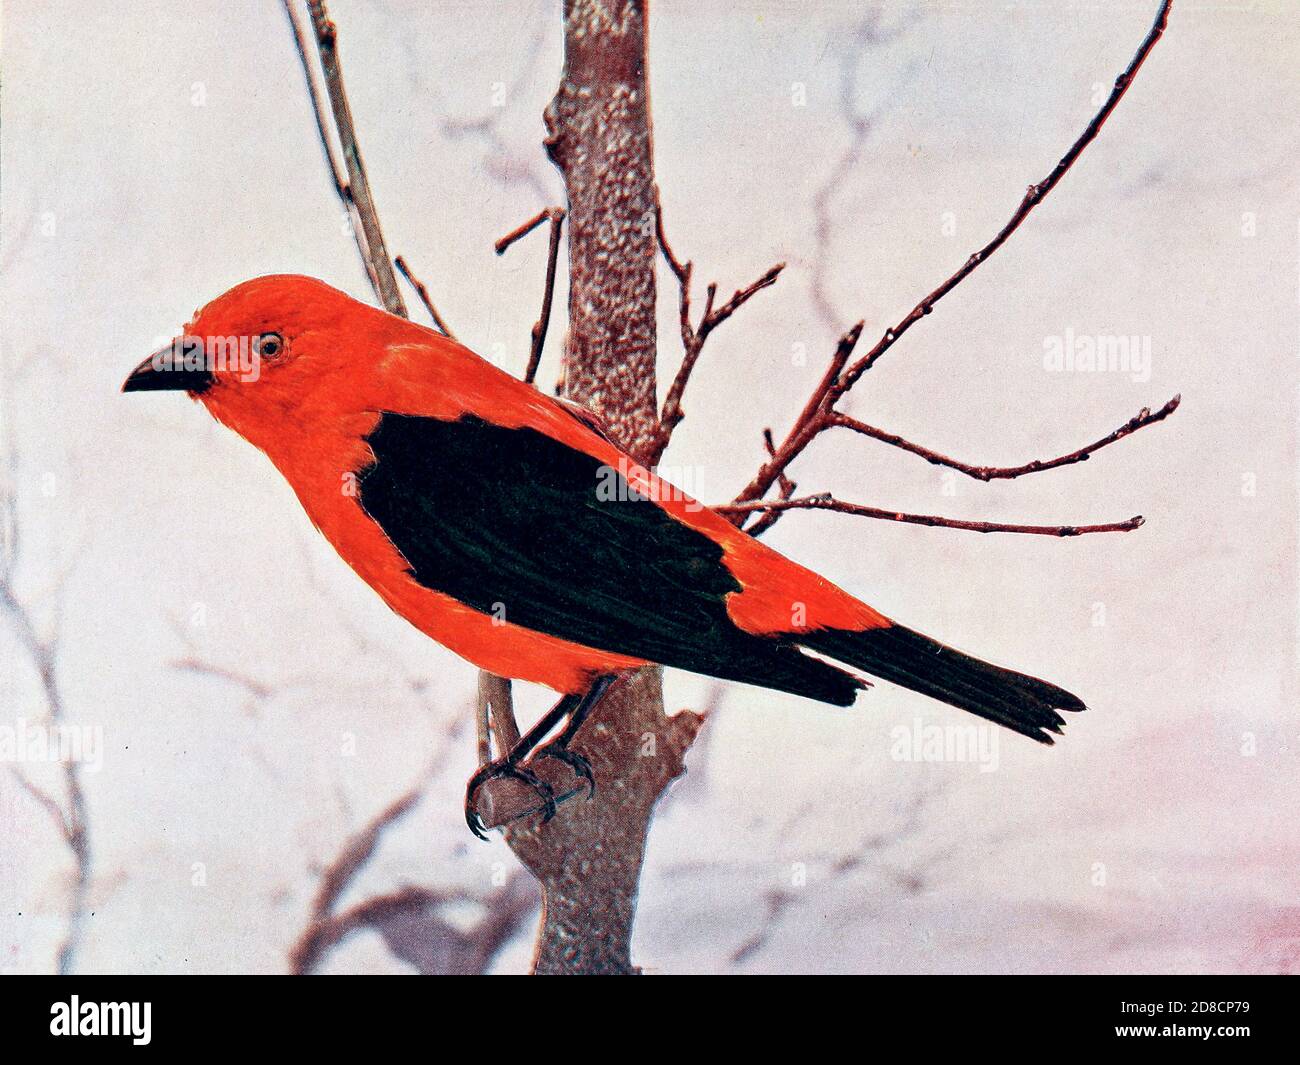 Der scharlachrote Tanager (Piranga olivacea syn Piranga erythromelas) ist ein mittelgroßer amerikanischer singvogel. From Birds : illustriert durch Farbfotografie : eine monatliche Serie. Kenntnisse über Bird-Life Vol. 1 Nr. 1 Juni 1897 Stockfoto